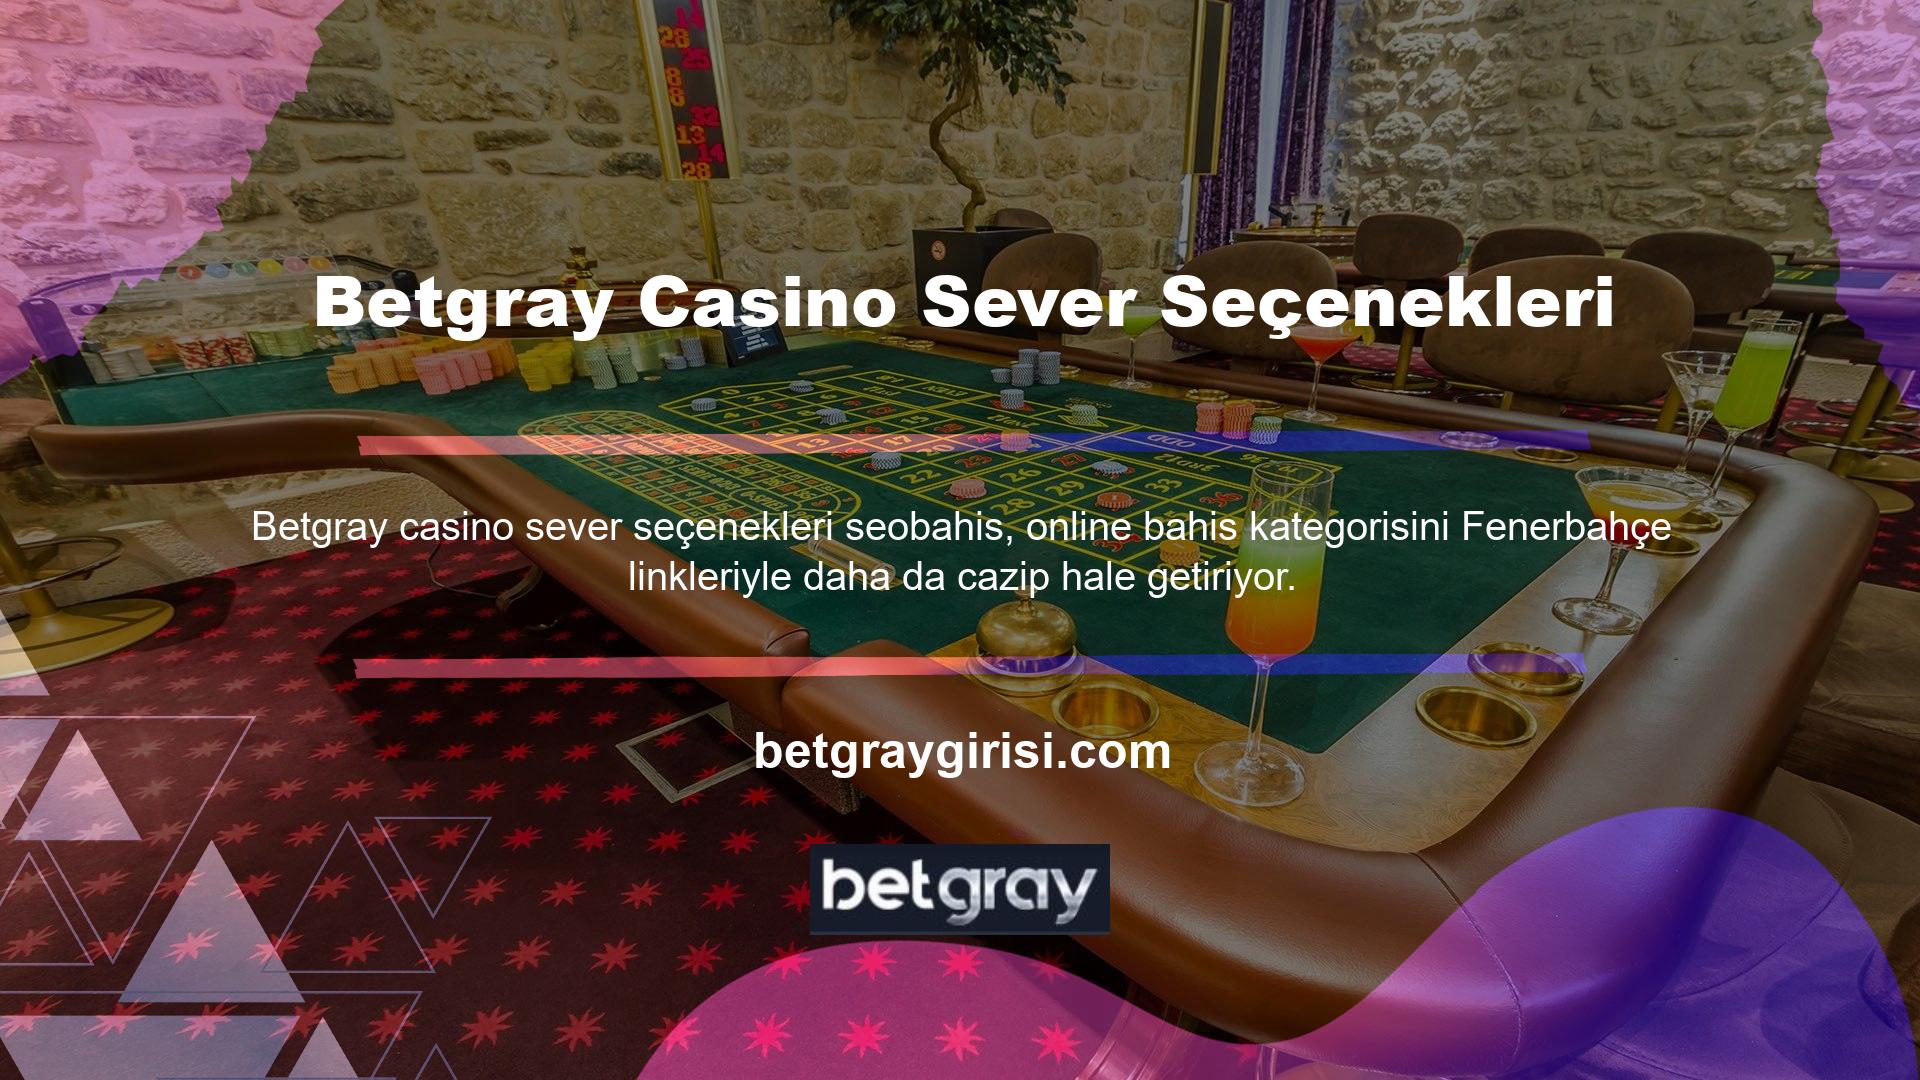 Betgray Slot, sarı ve lacivert kulüp maçlarına bahis yapmak için şiddetle tavsiye edilen bir çevrimiçi casino platformudur; burada Fenerbahçe maçlarında zafer kazanmak için kupon oluşturabilirsiniz